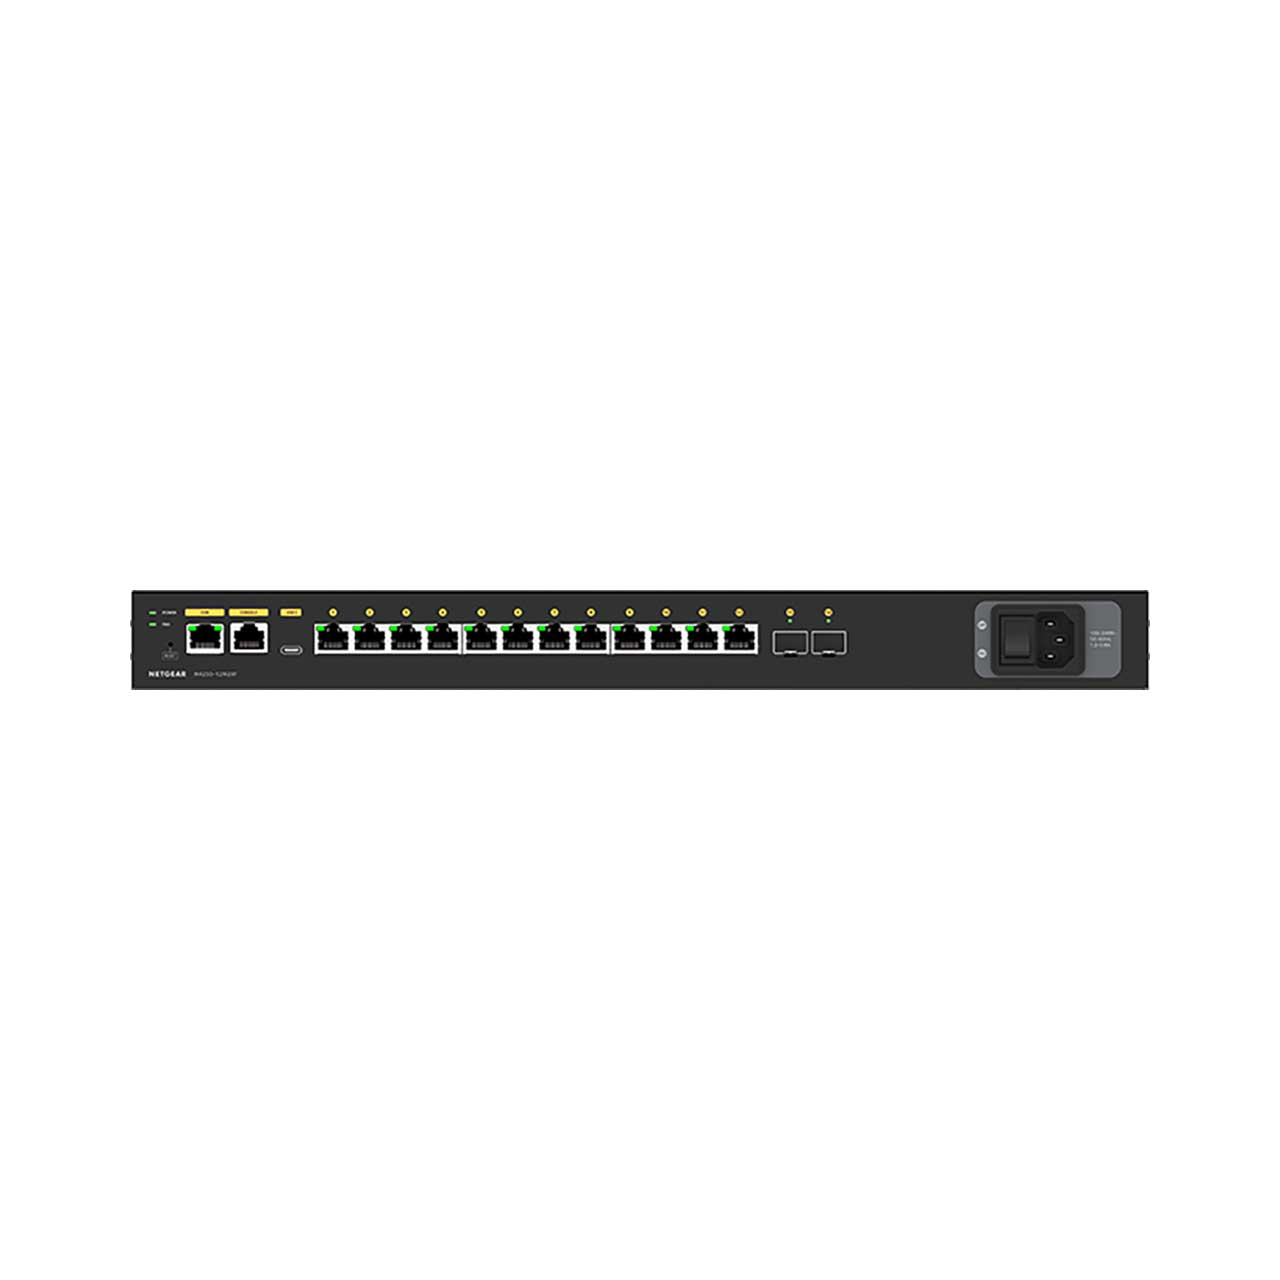 Netgear 12 Port 2.5 Gigabit Ethernet Switch with 2 SFP MSM4214X - B2B -  Blackwire